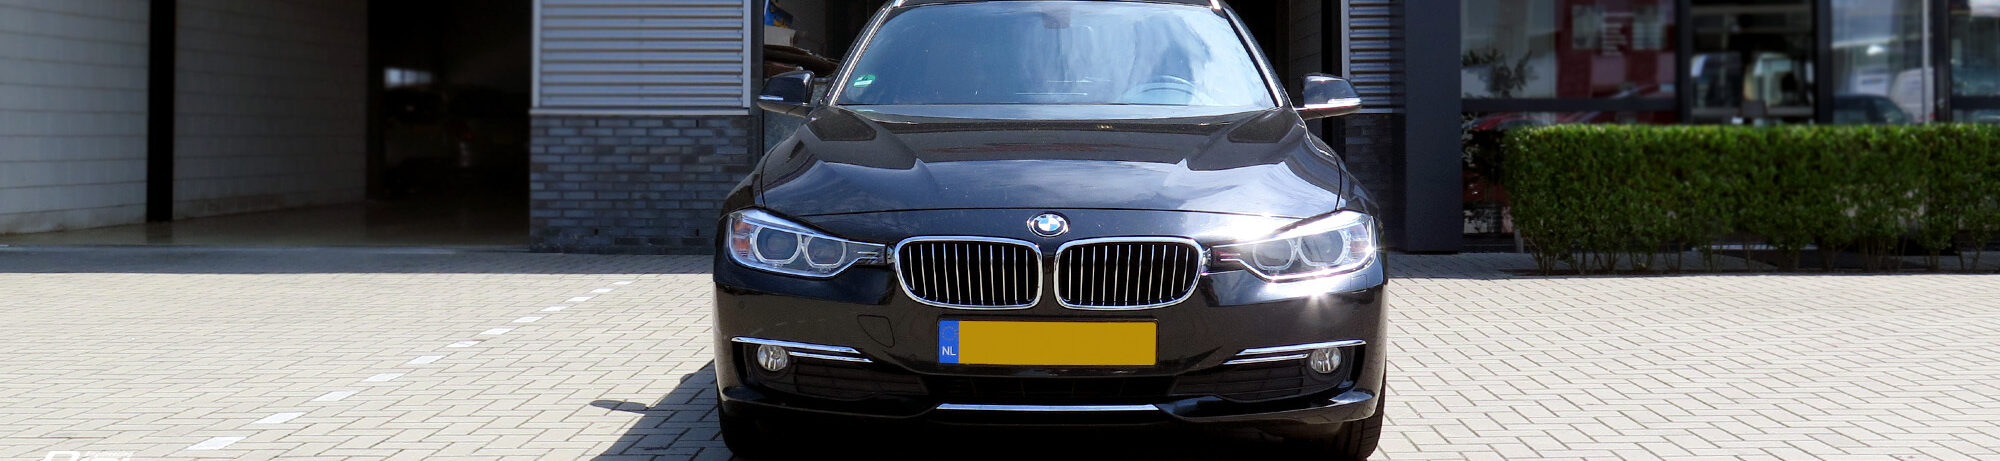 Bmw Tunen Met Garantie BMW Chiptuning | Altijd Levenslange Garantie | Digicar - Digicar